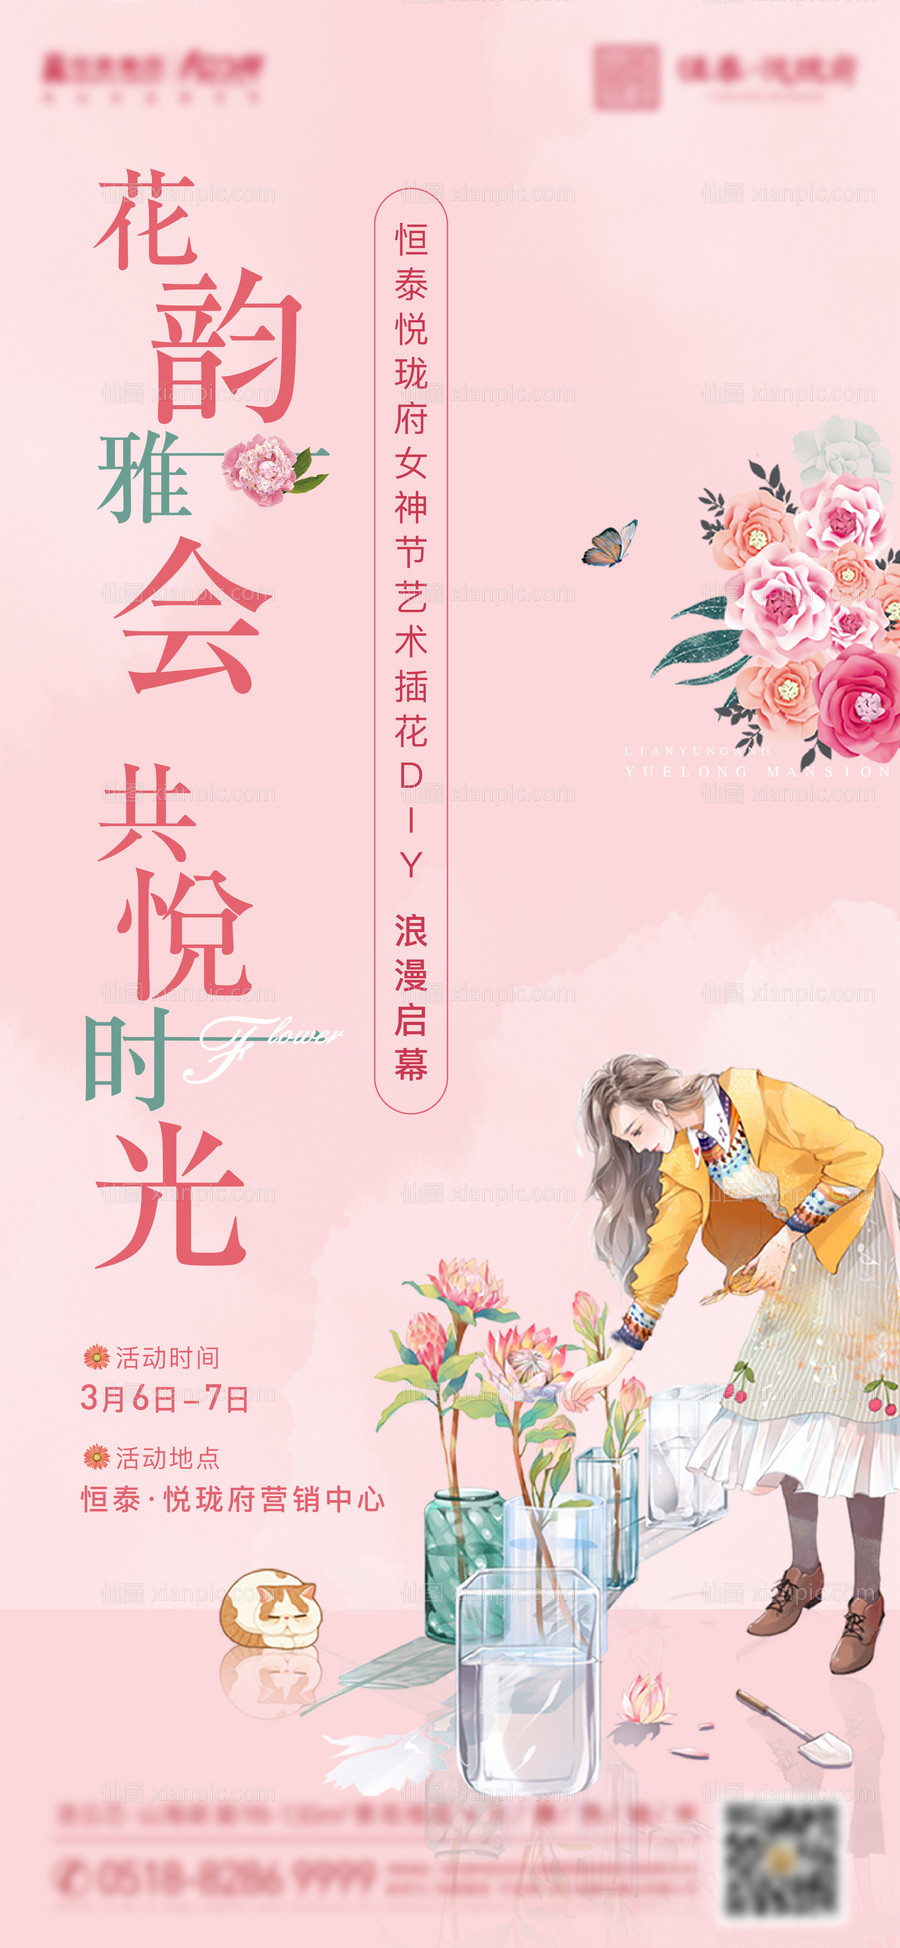 素材乐-女神节插花活动海报